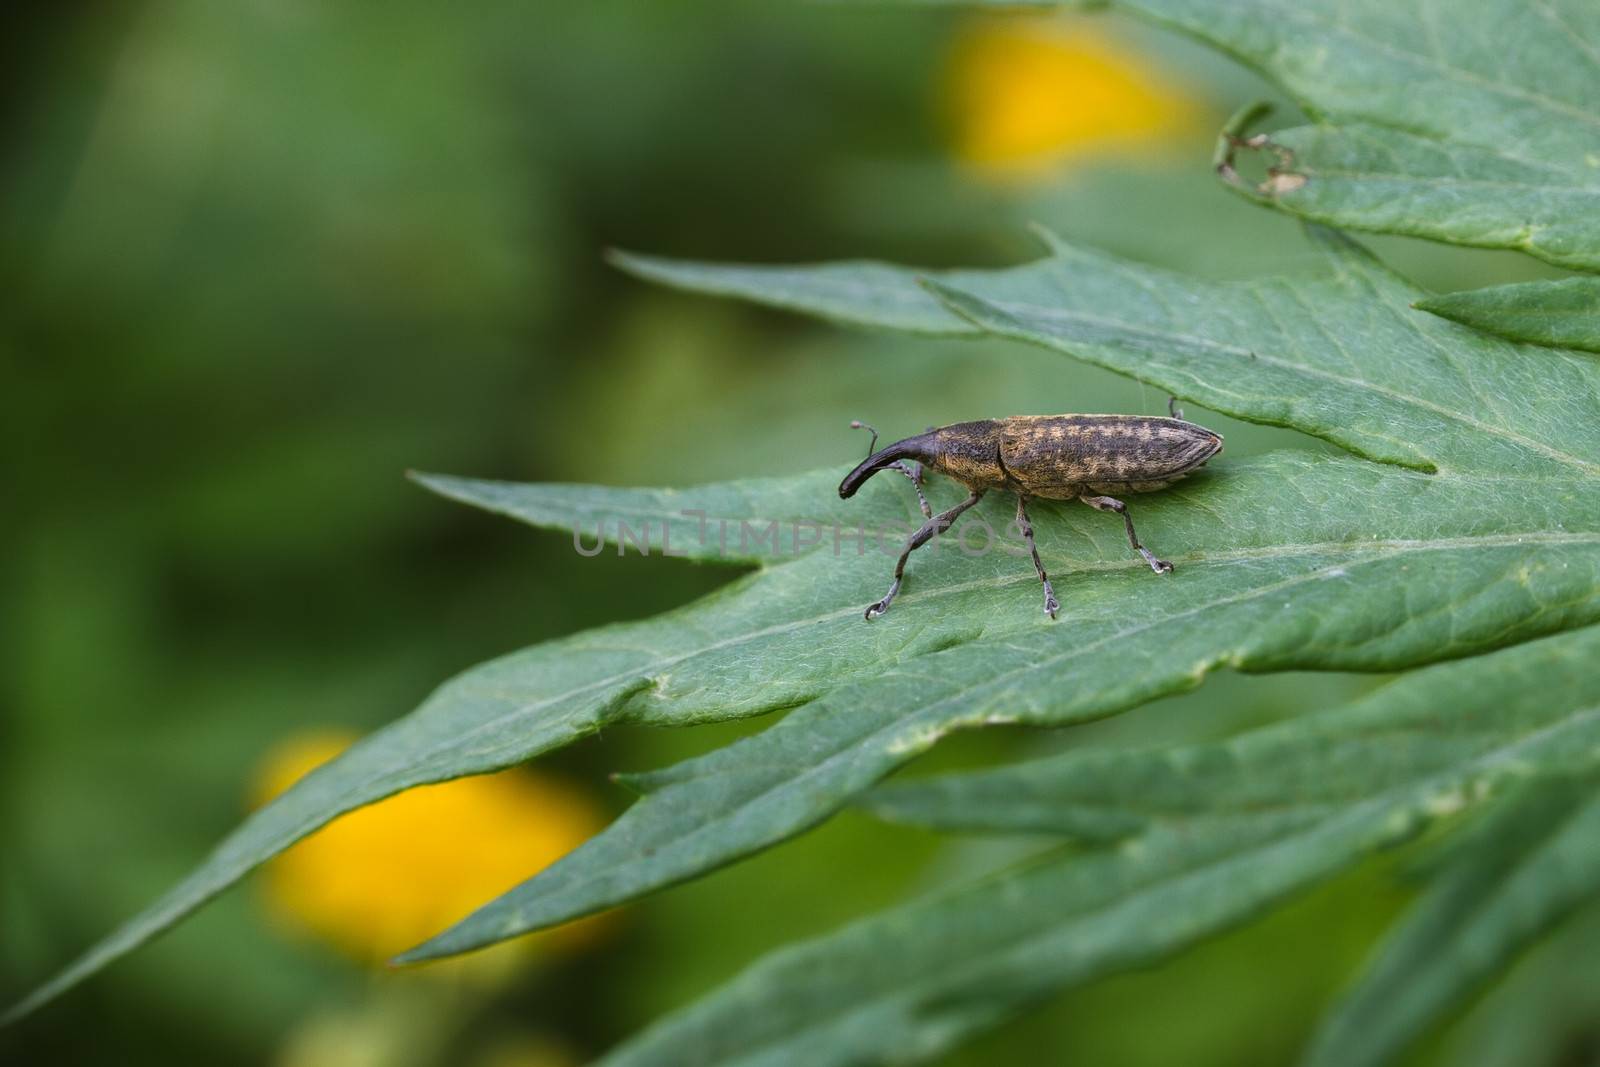 Weevil beetle by Ohotnik